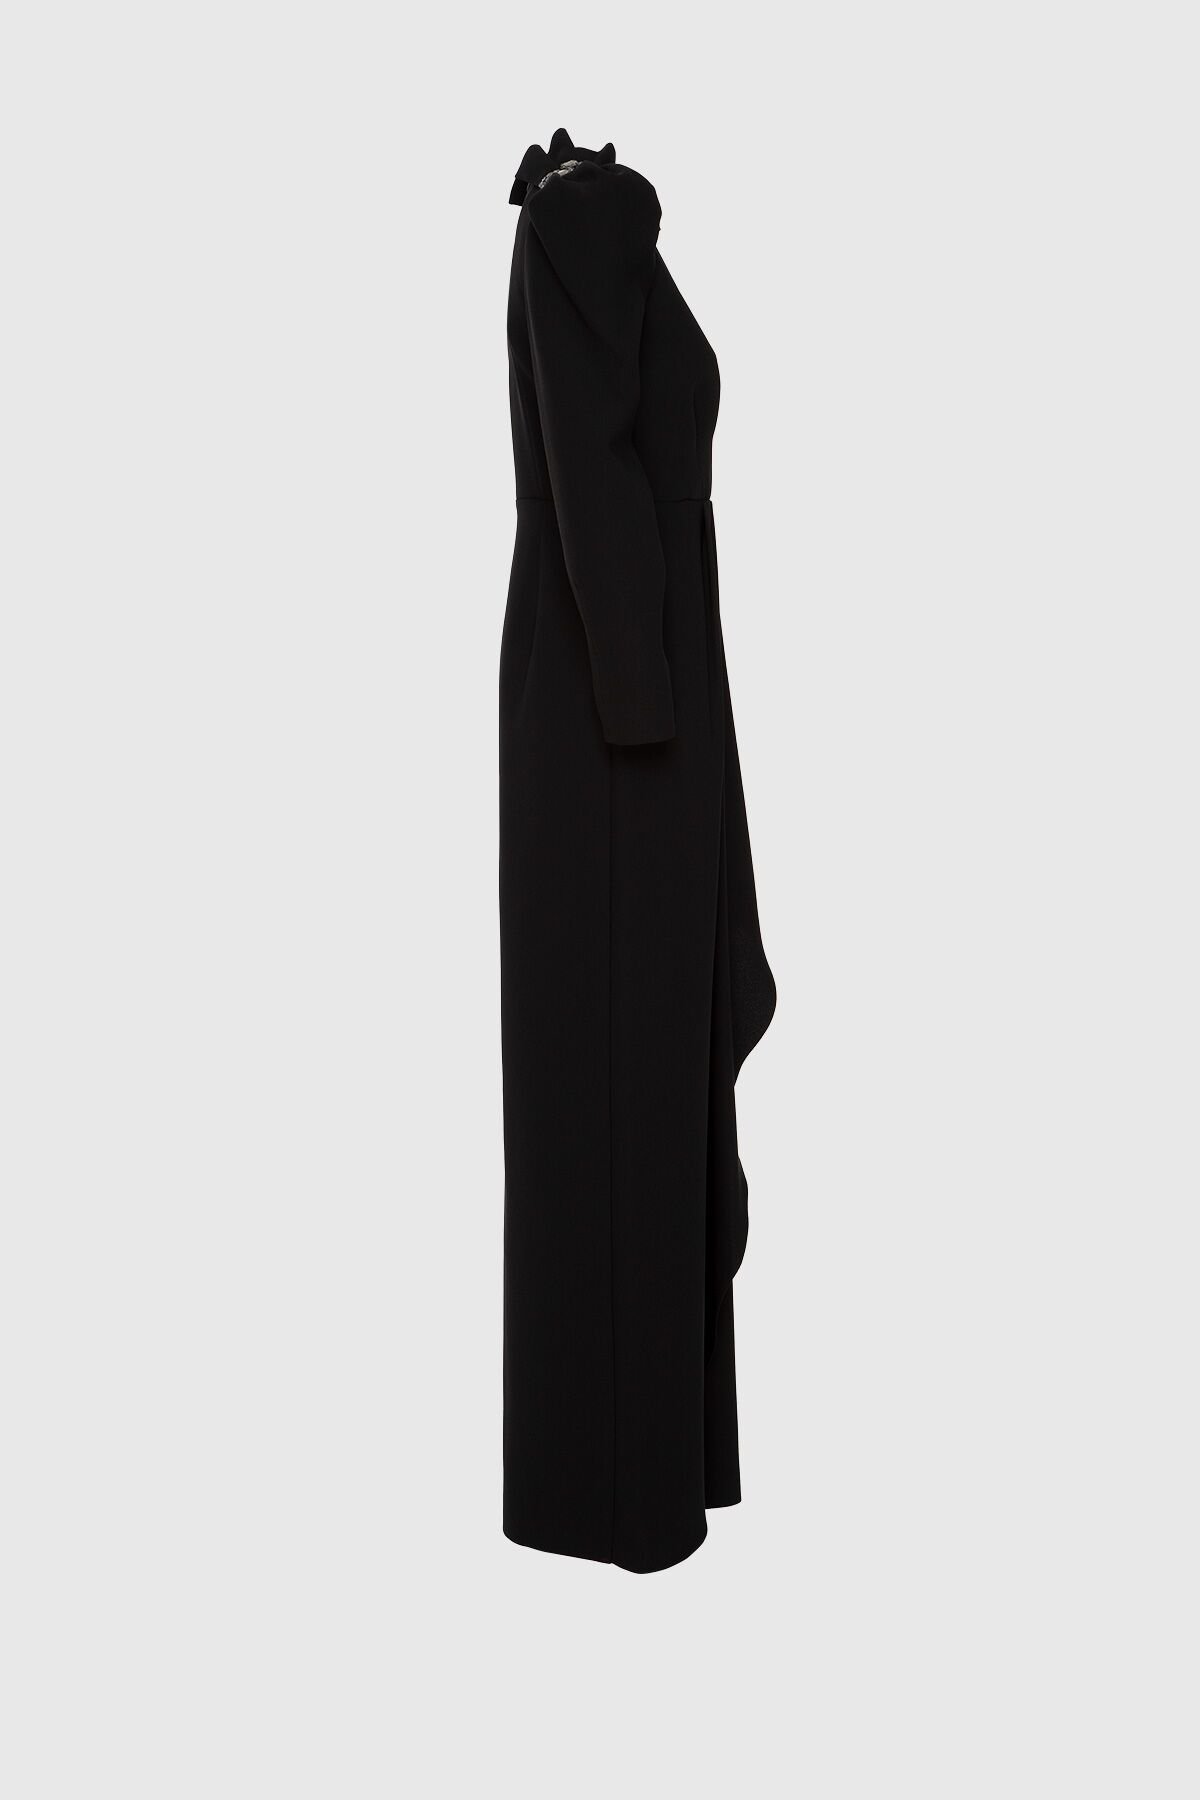 Embroidered Detailed V Neck Long Black Evening Dress